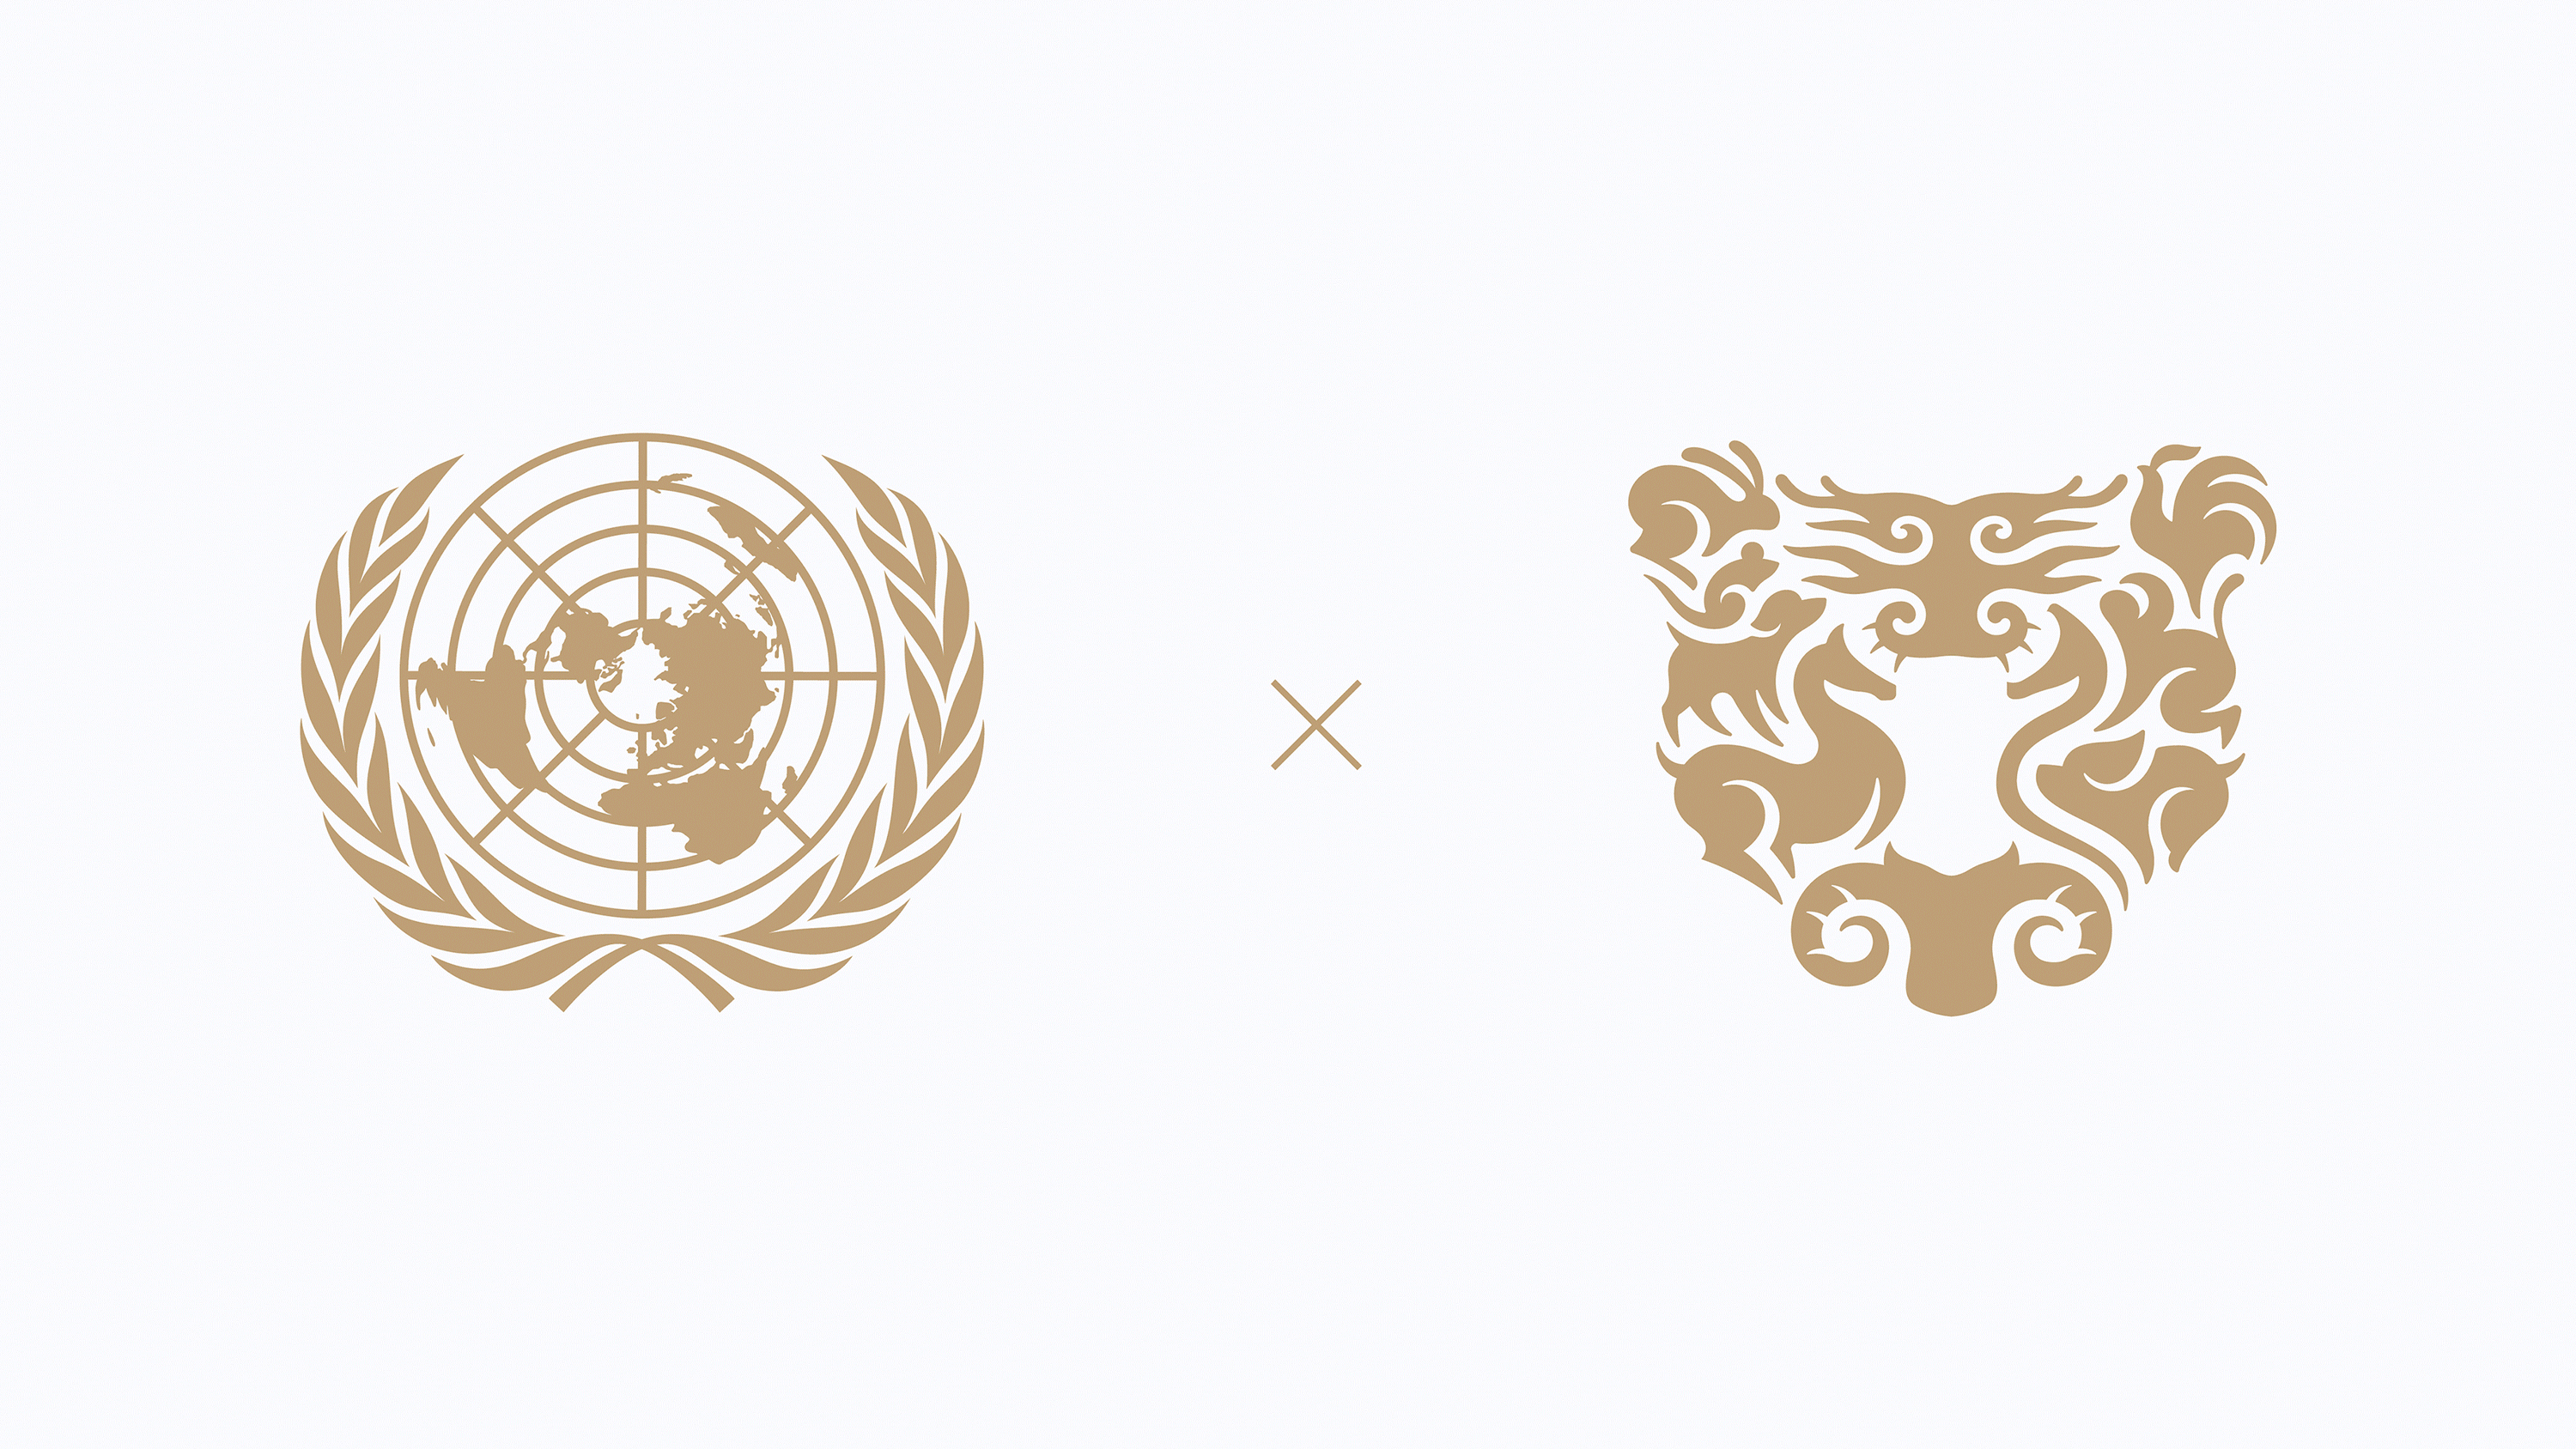 联合国，邮票，虎年，老虎，插画，